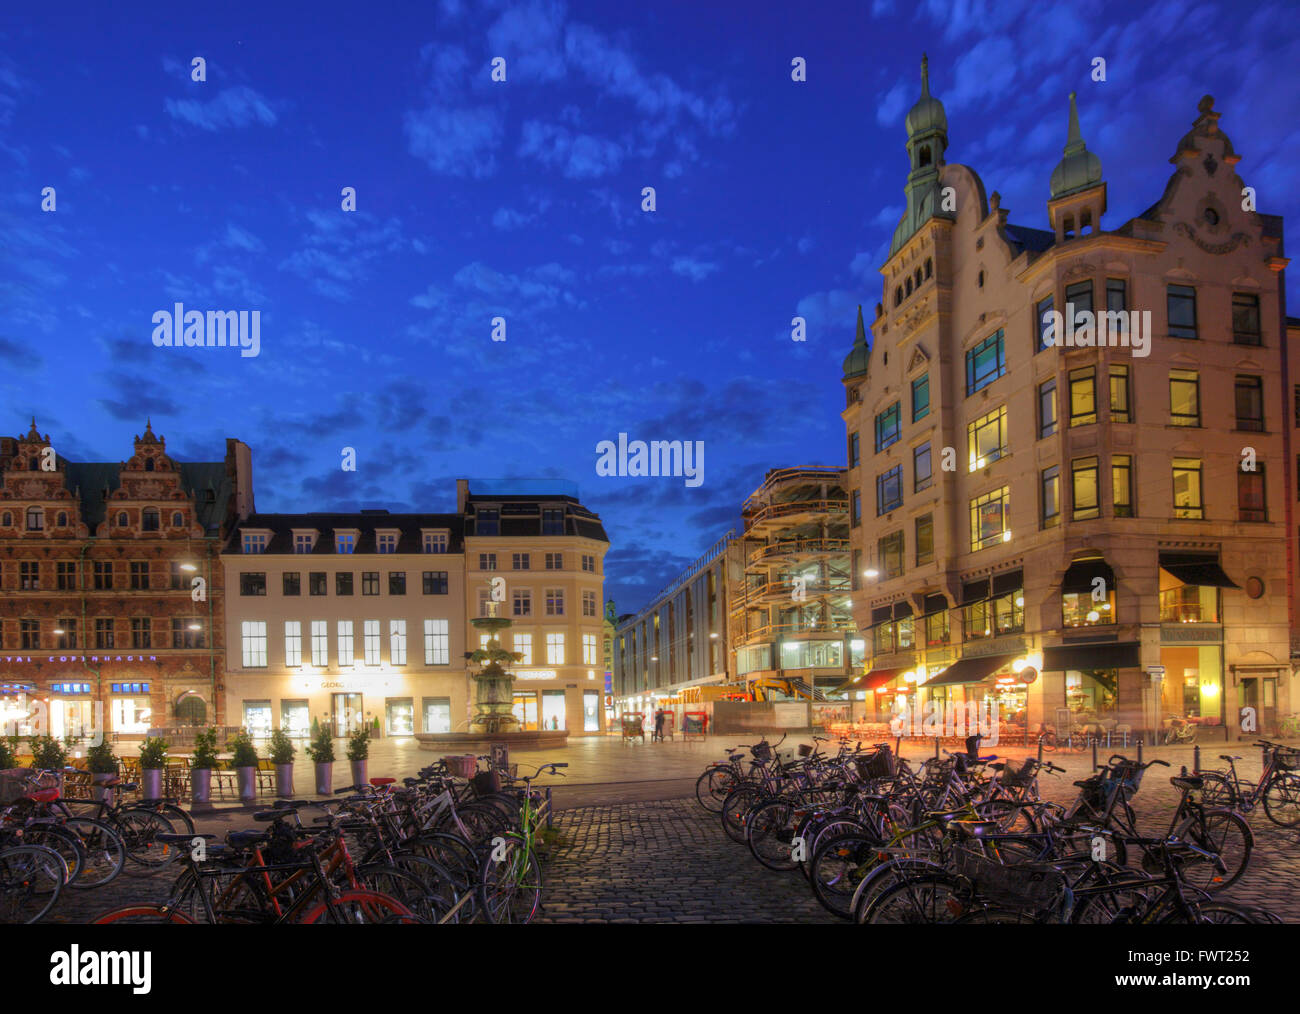 Amagertorv square, Copenhagen, Denmark Stock Photo